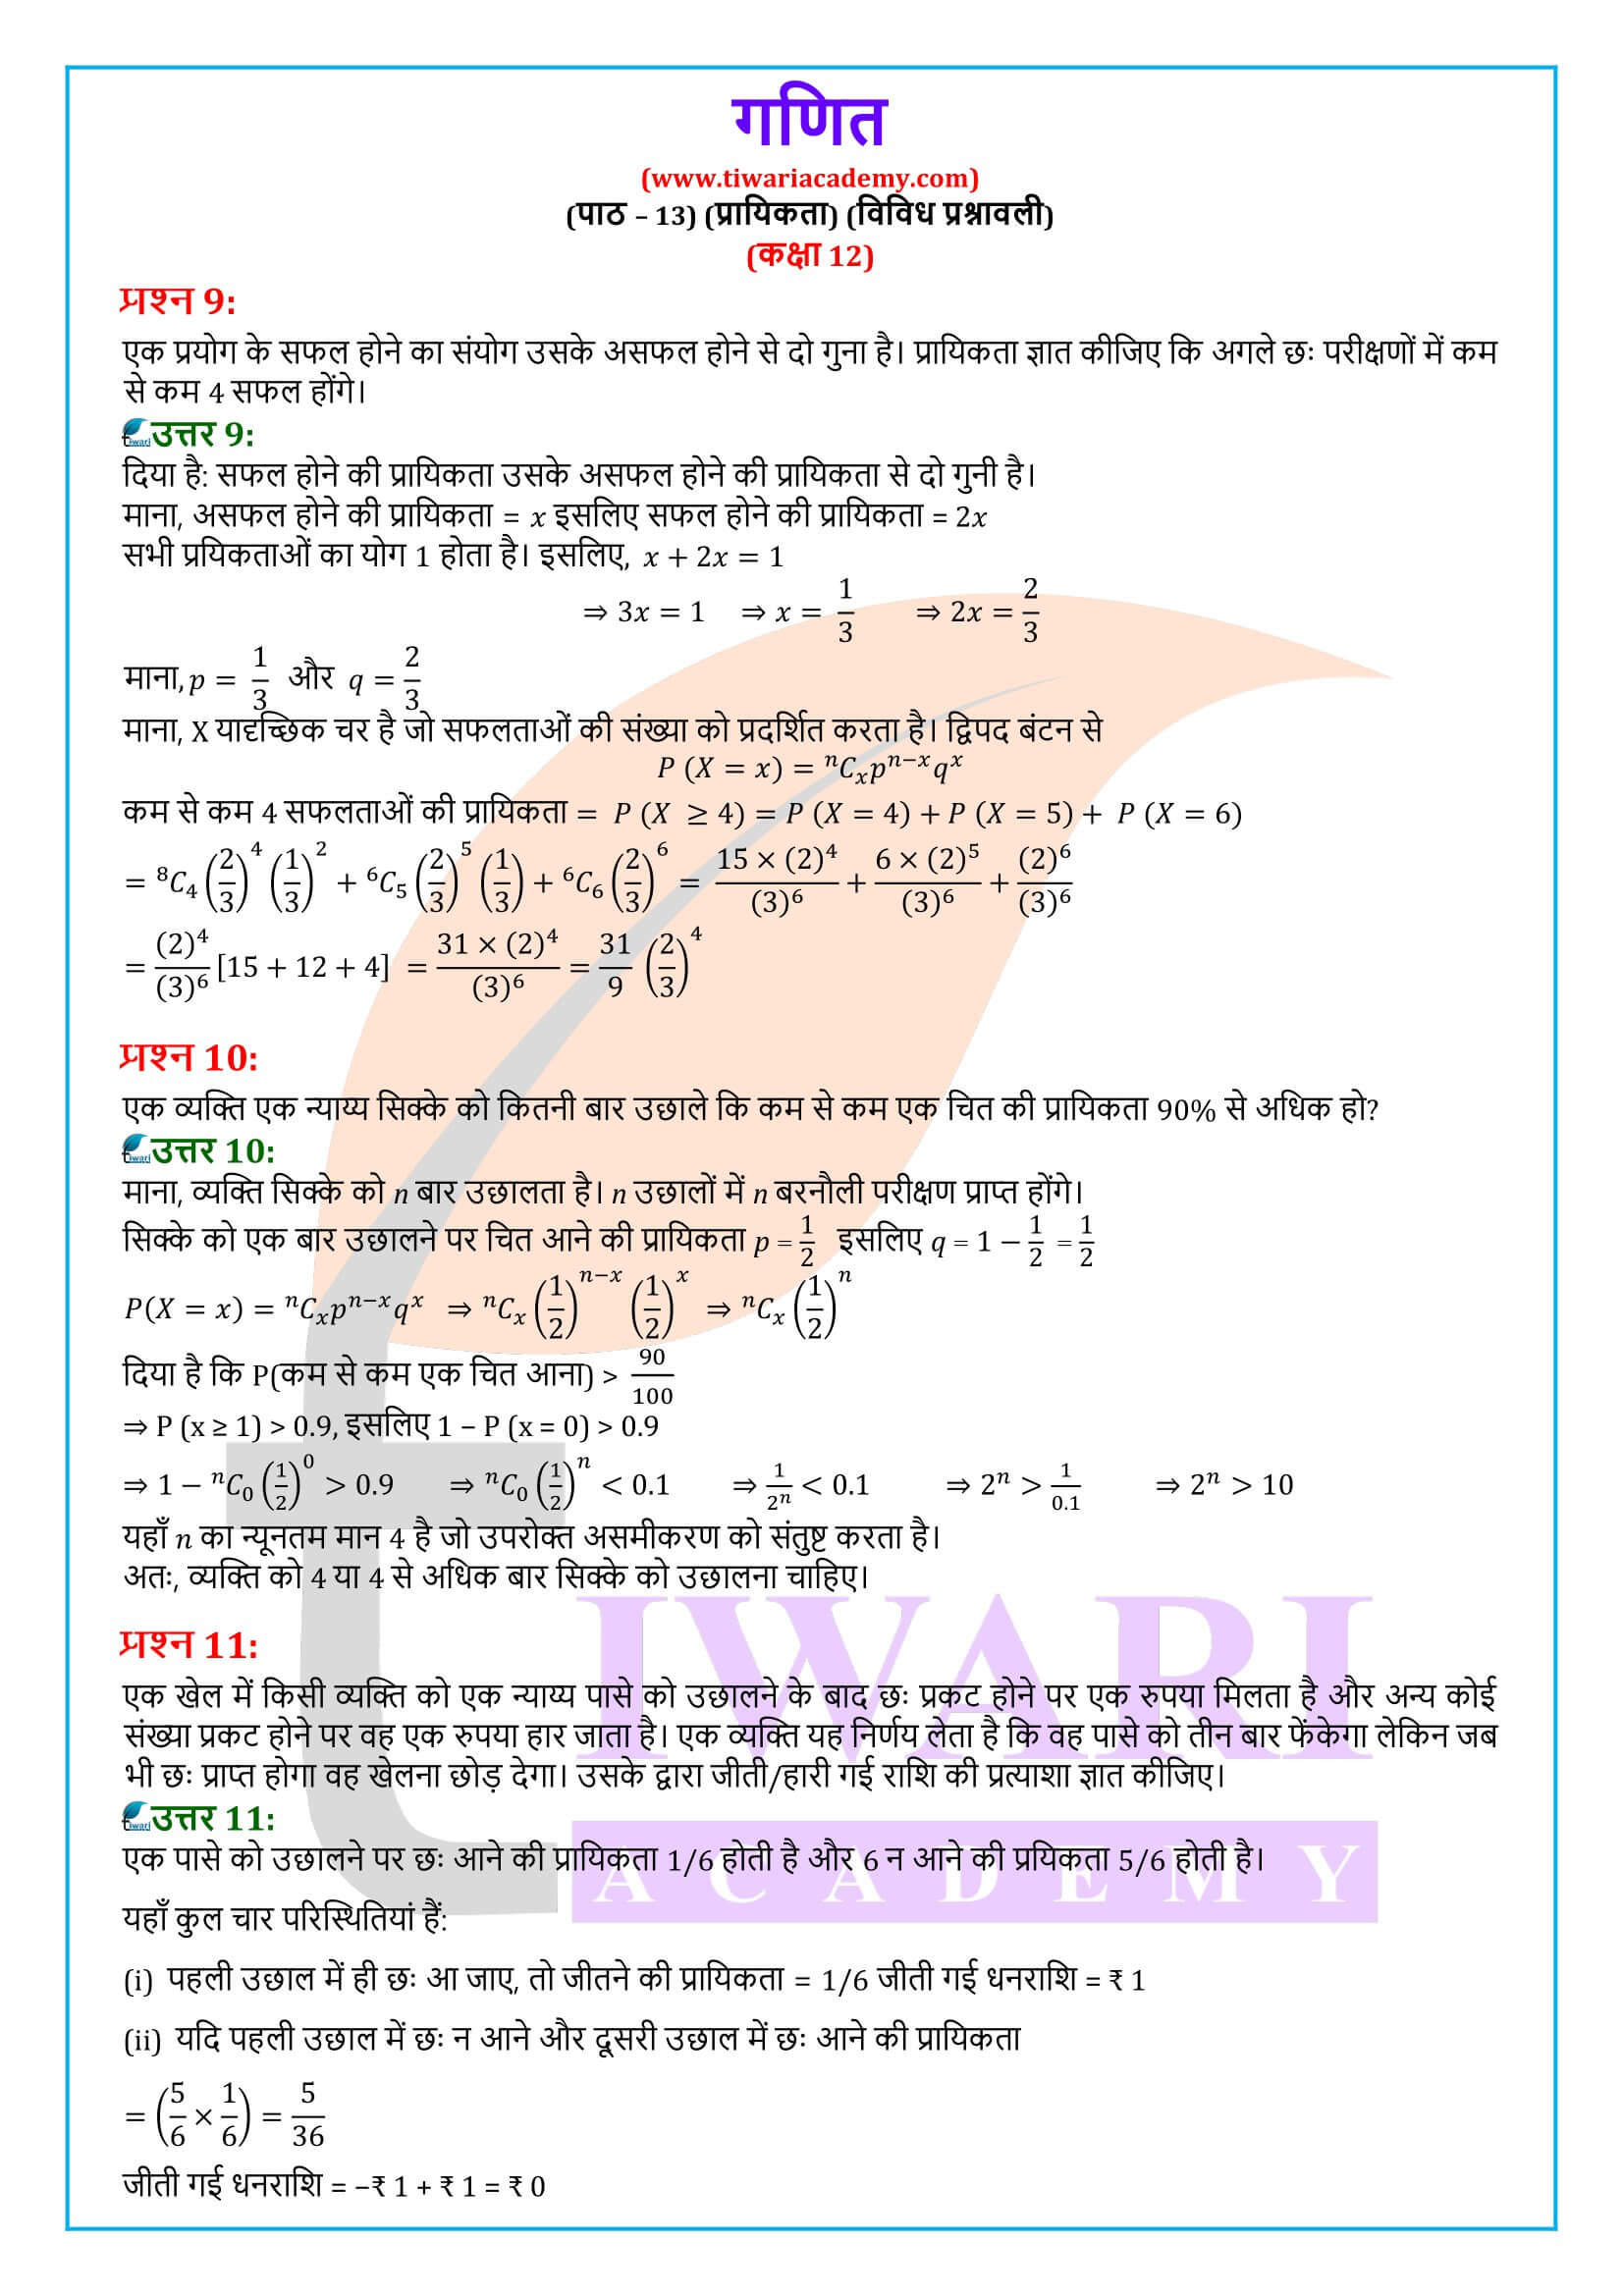 कक्षा 12 गणित अध्याय 13 विविध प्रश्नावली के प्रश्नों के हल